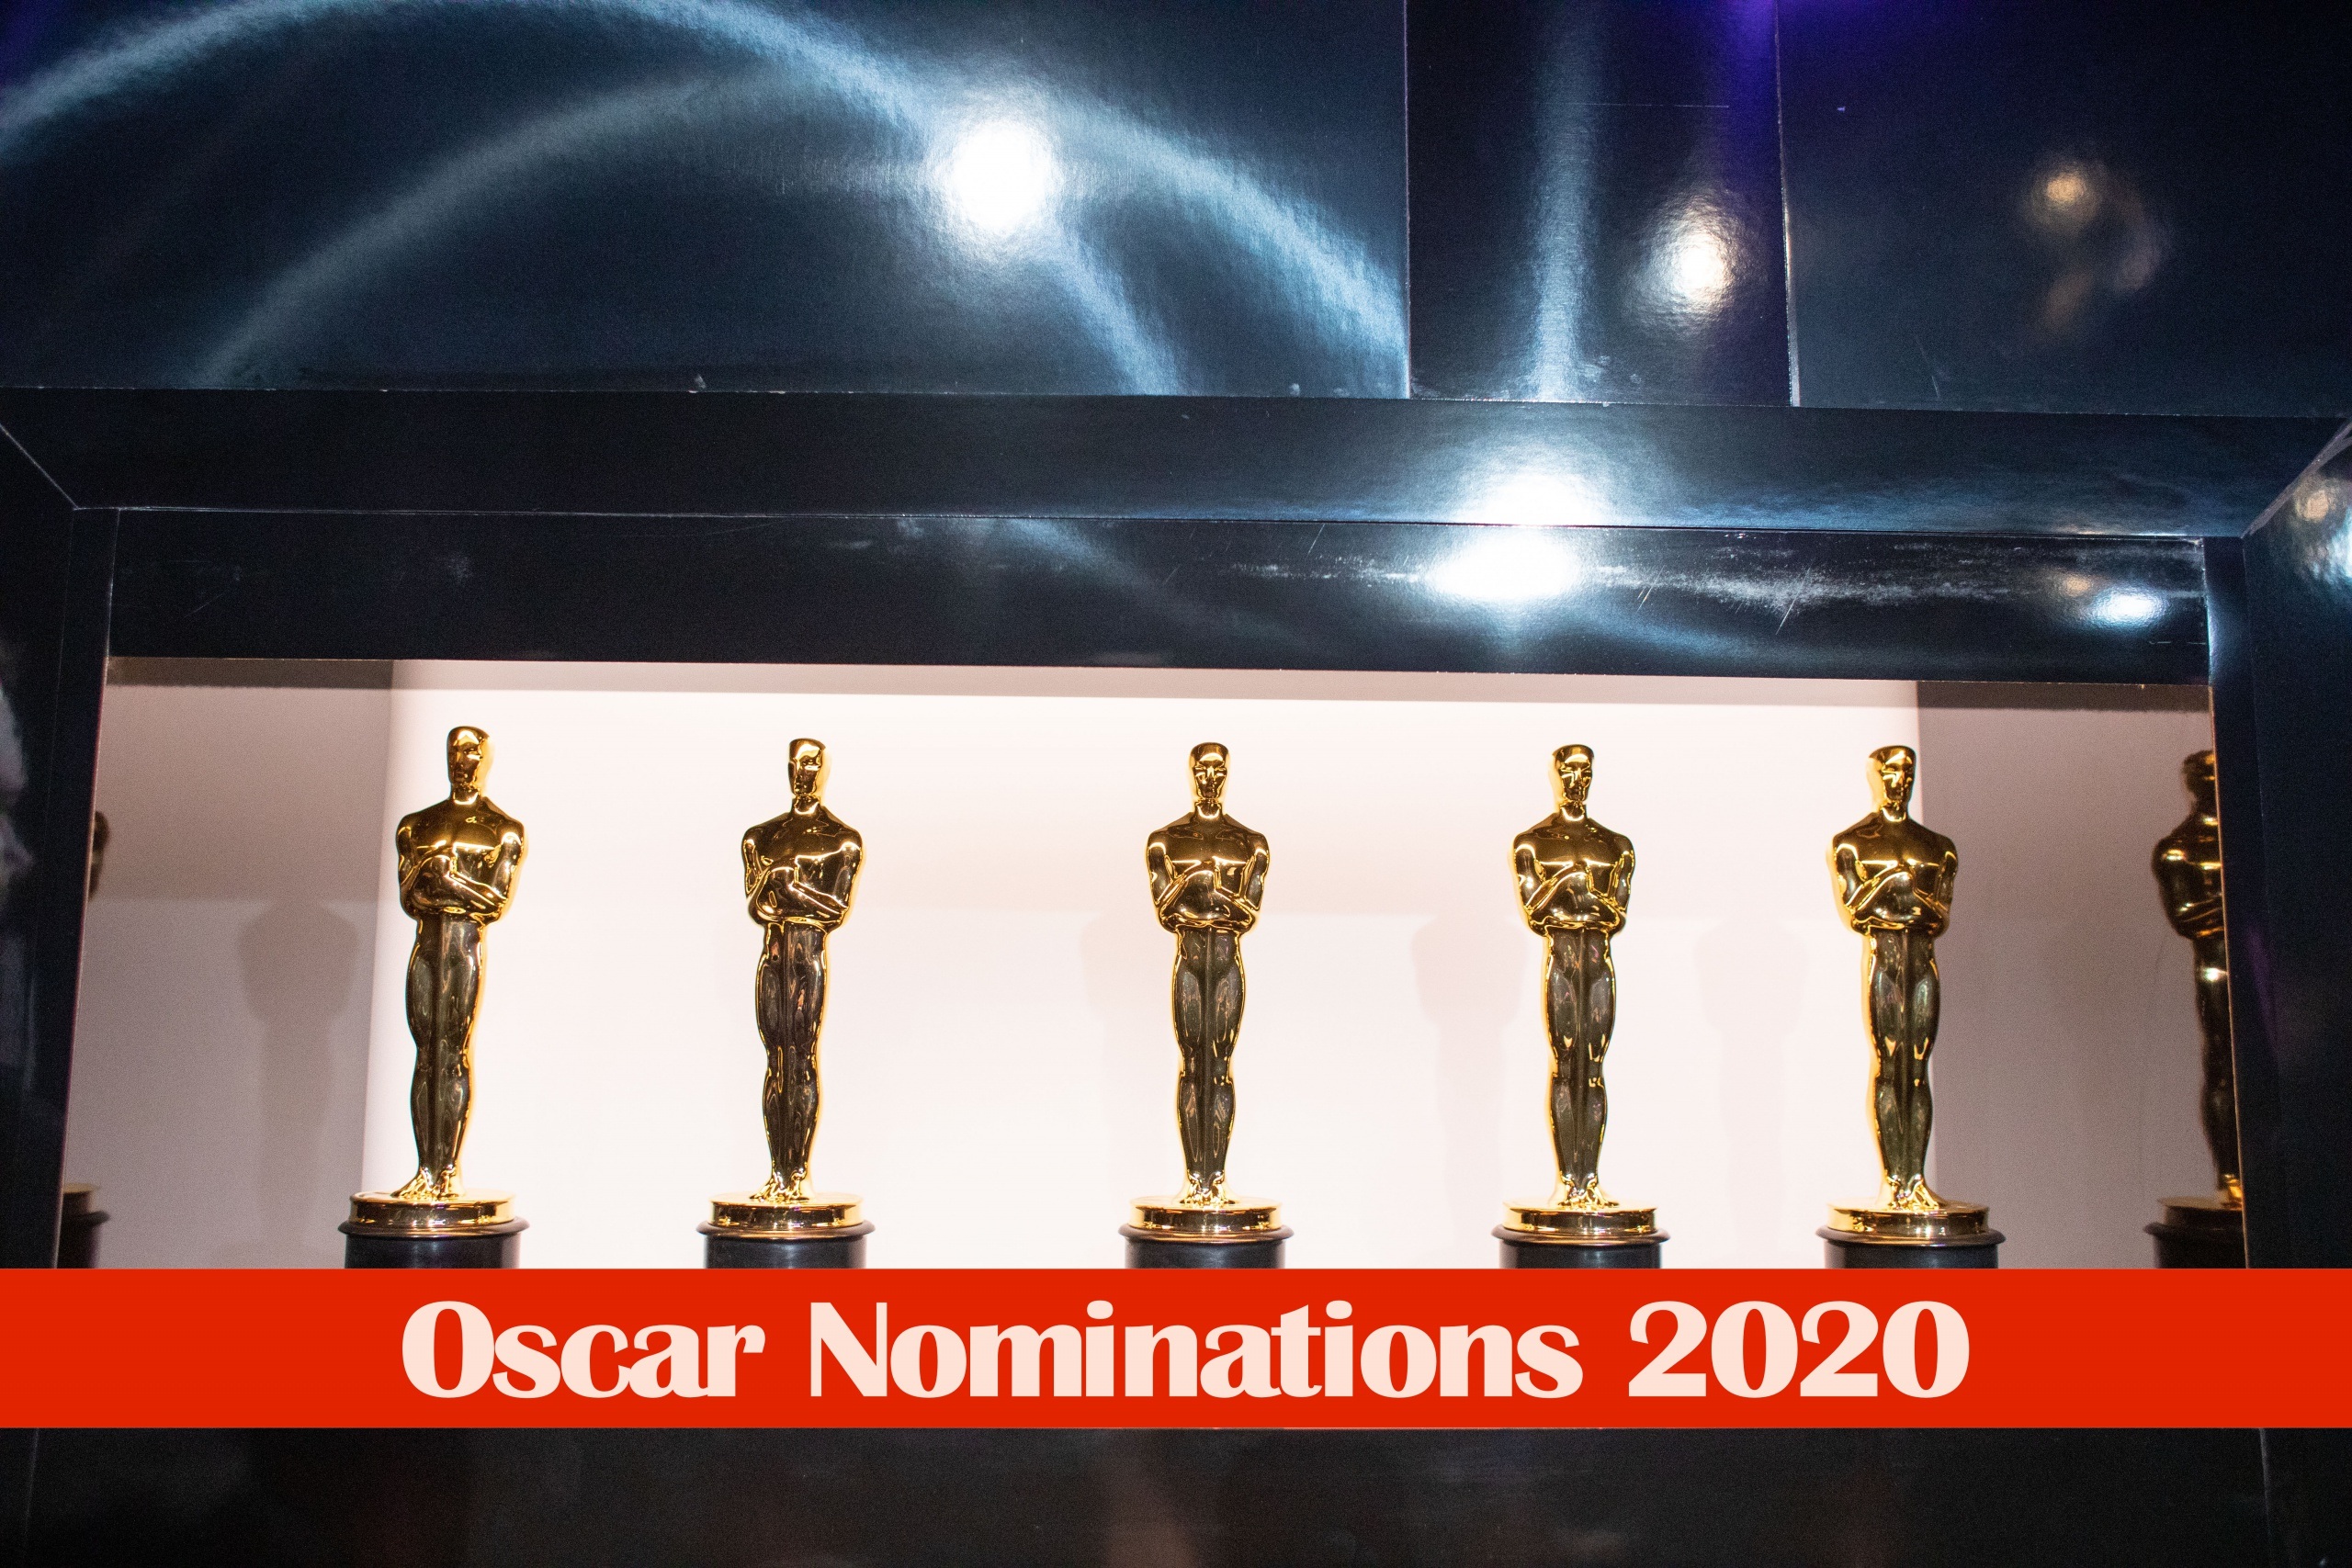 Oscar-Nominierungen 2020